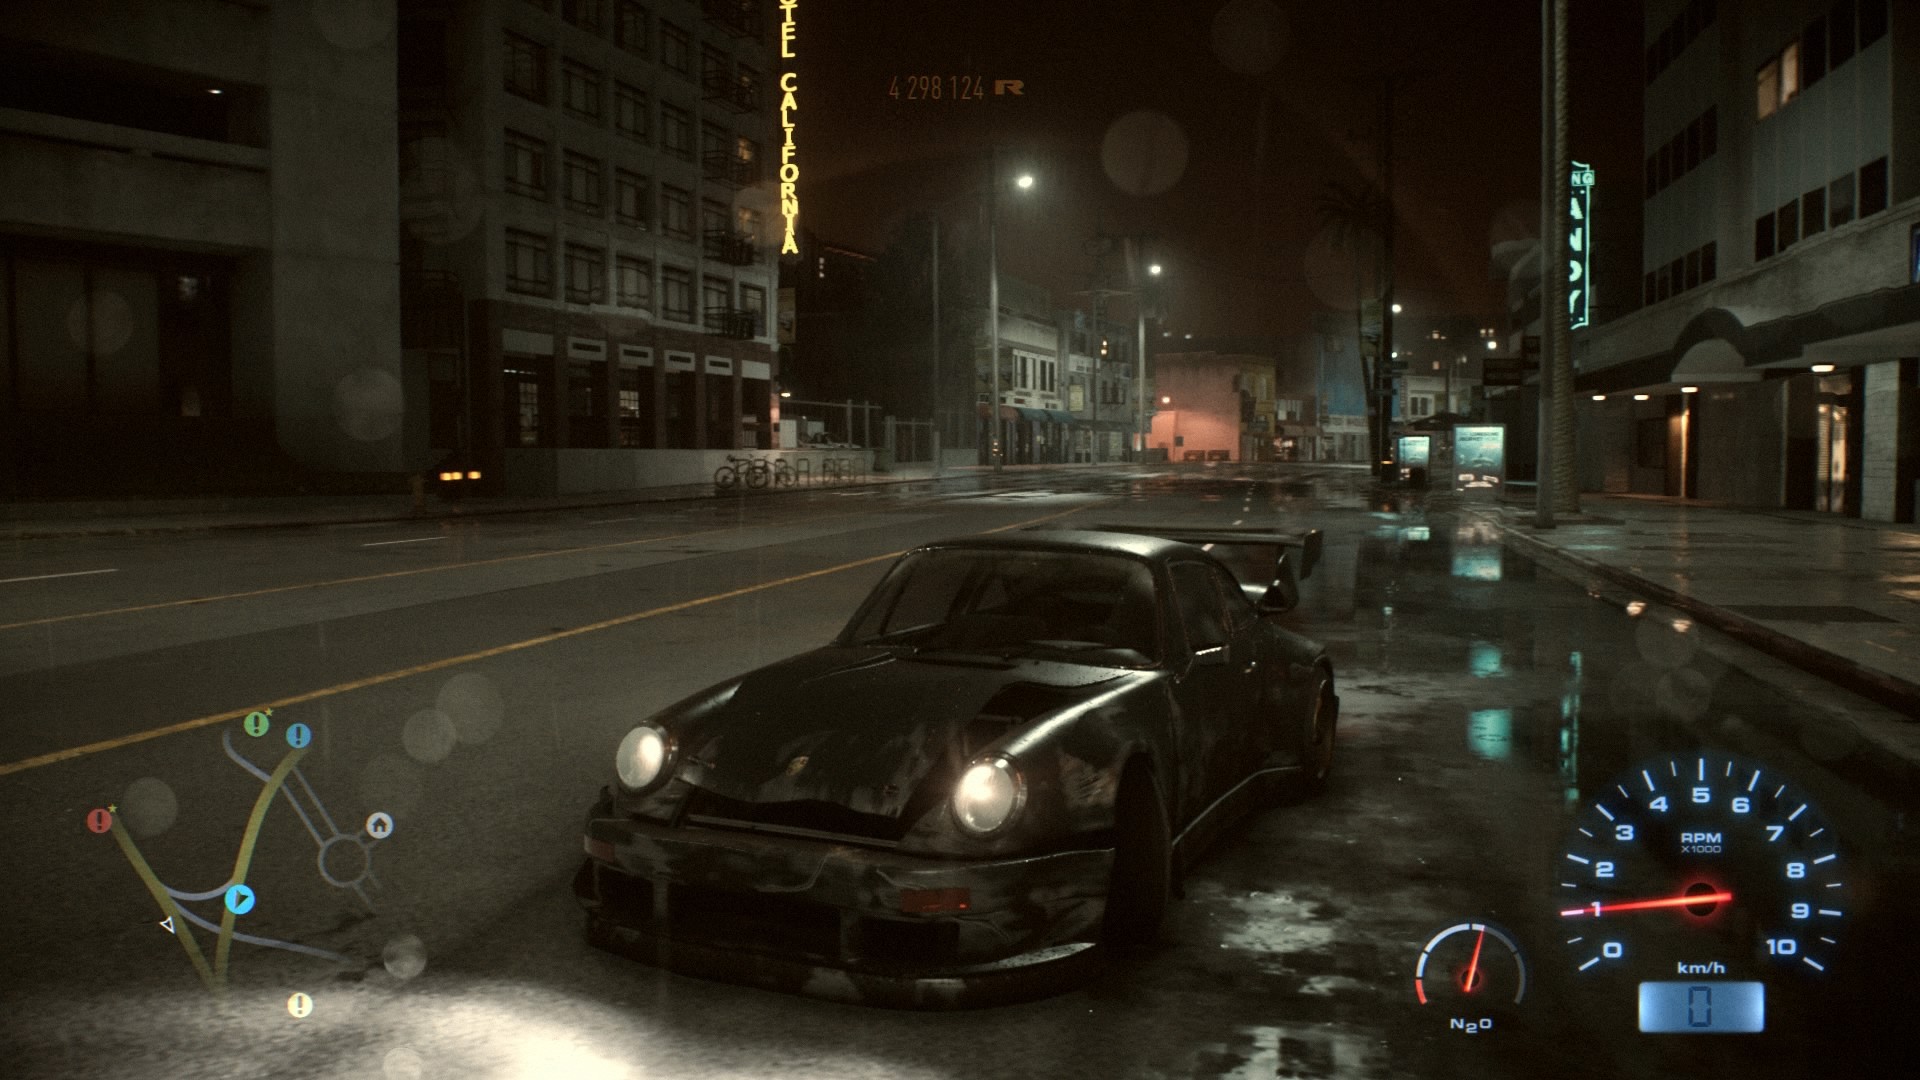 Nfs города. Need for Speed ночной город. Need for Speed Underground ночной город. Видеовставки в играх. Топ игр с ночной атмосферой с машинами.